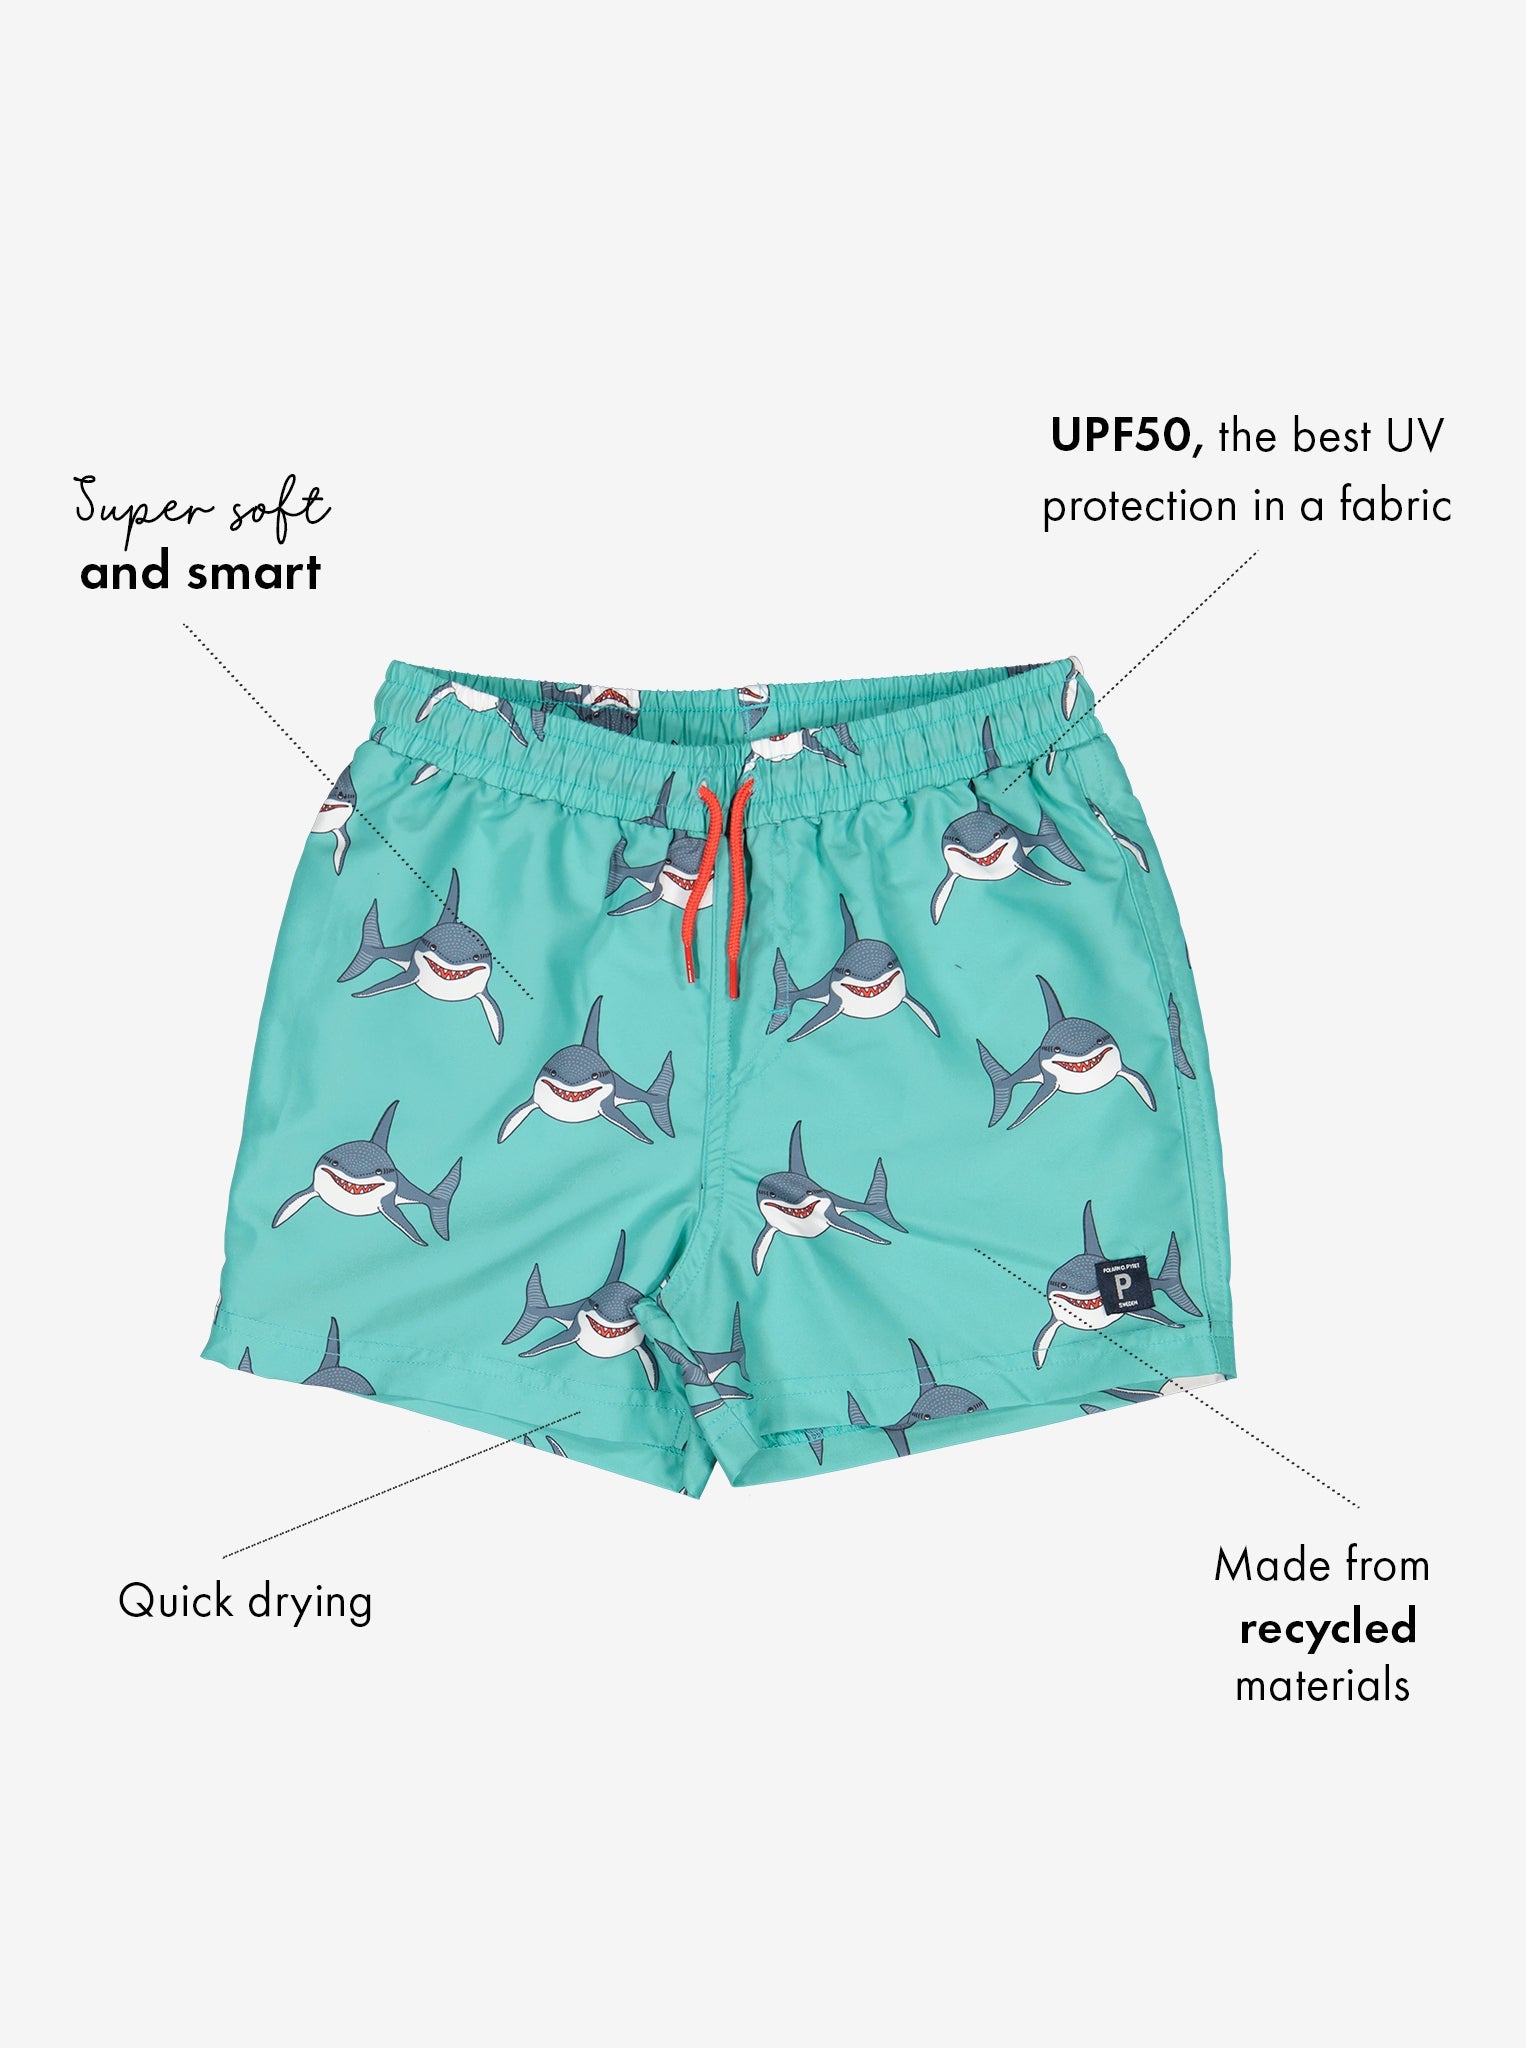 Shark Print Kids Swim Shorts